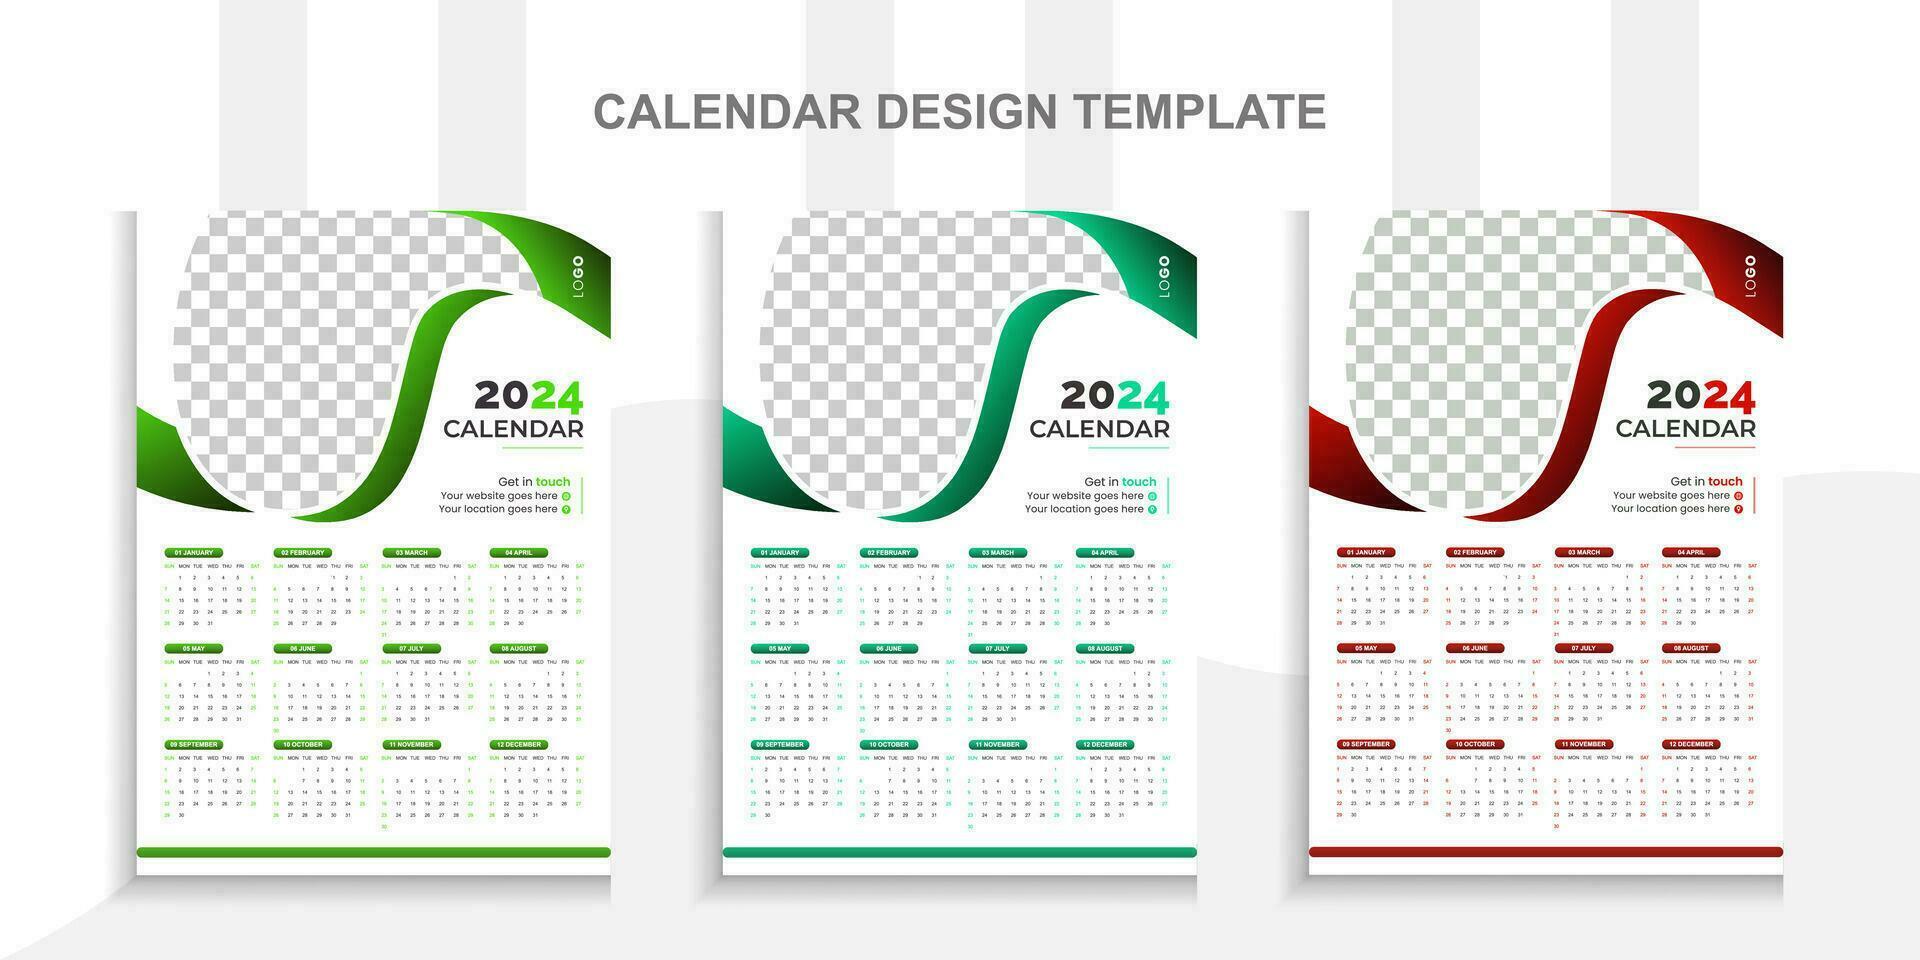 2024 moderno calendario diseño con sitio para foto y negocio o empresa logo.creativo calendario diseño vector diseño con 3 vistoso modelo.